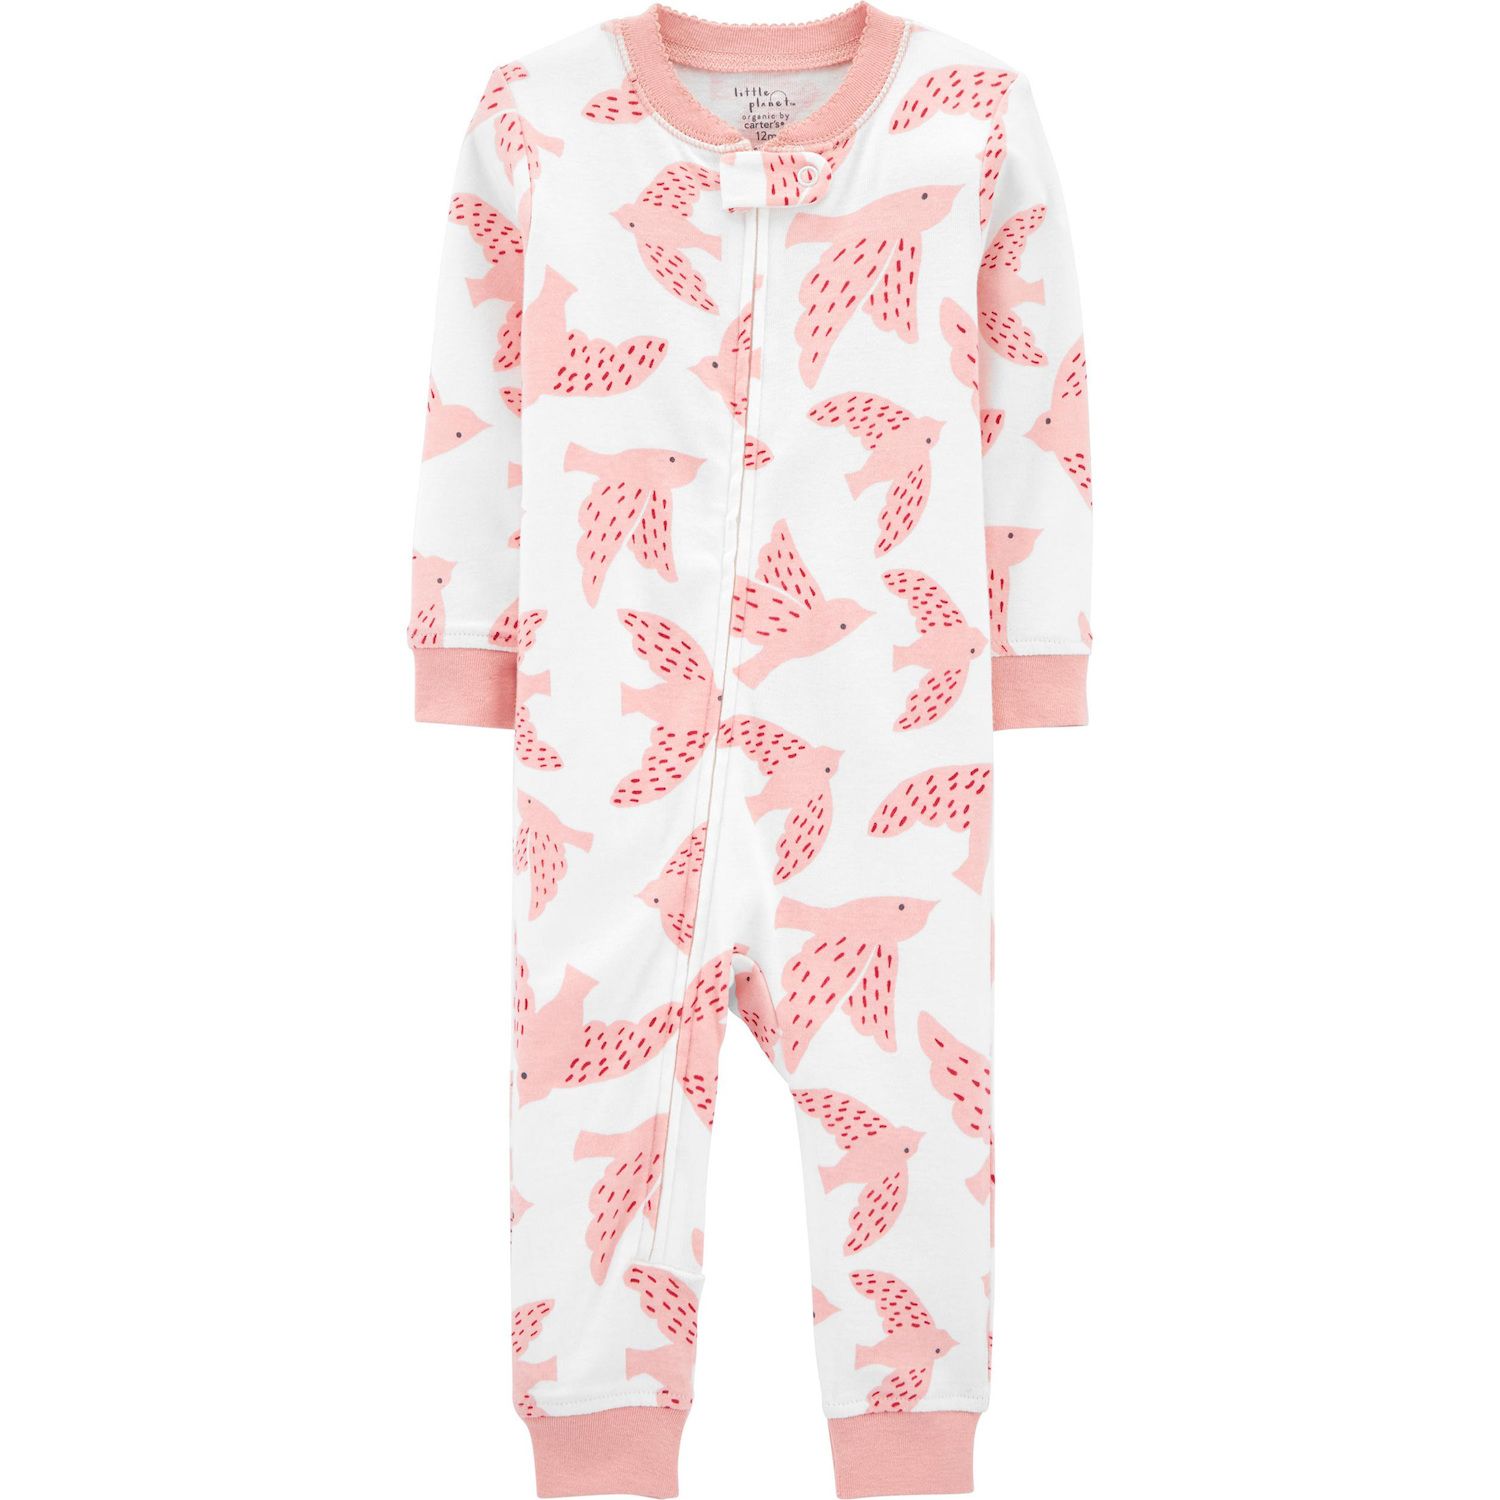 footless baby pajamas